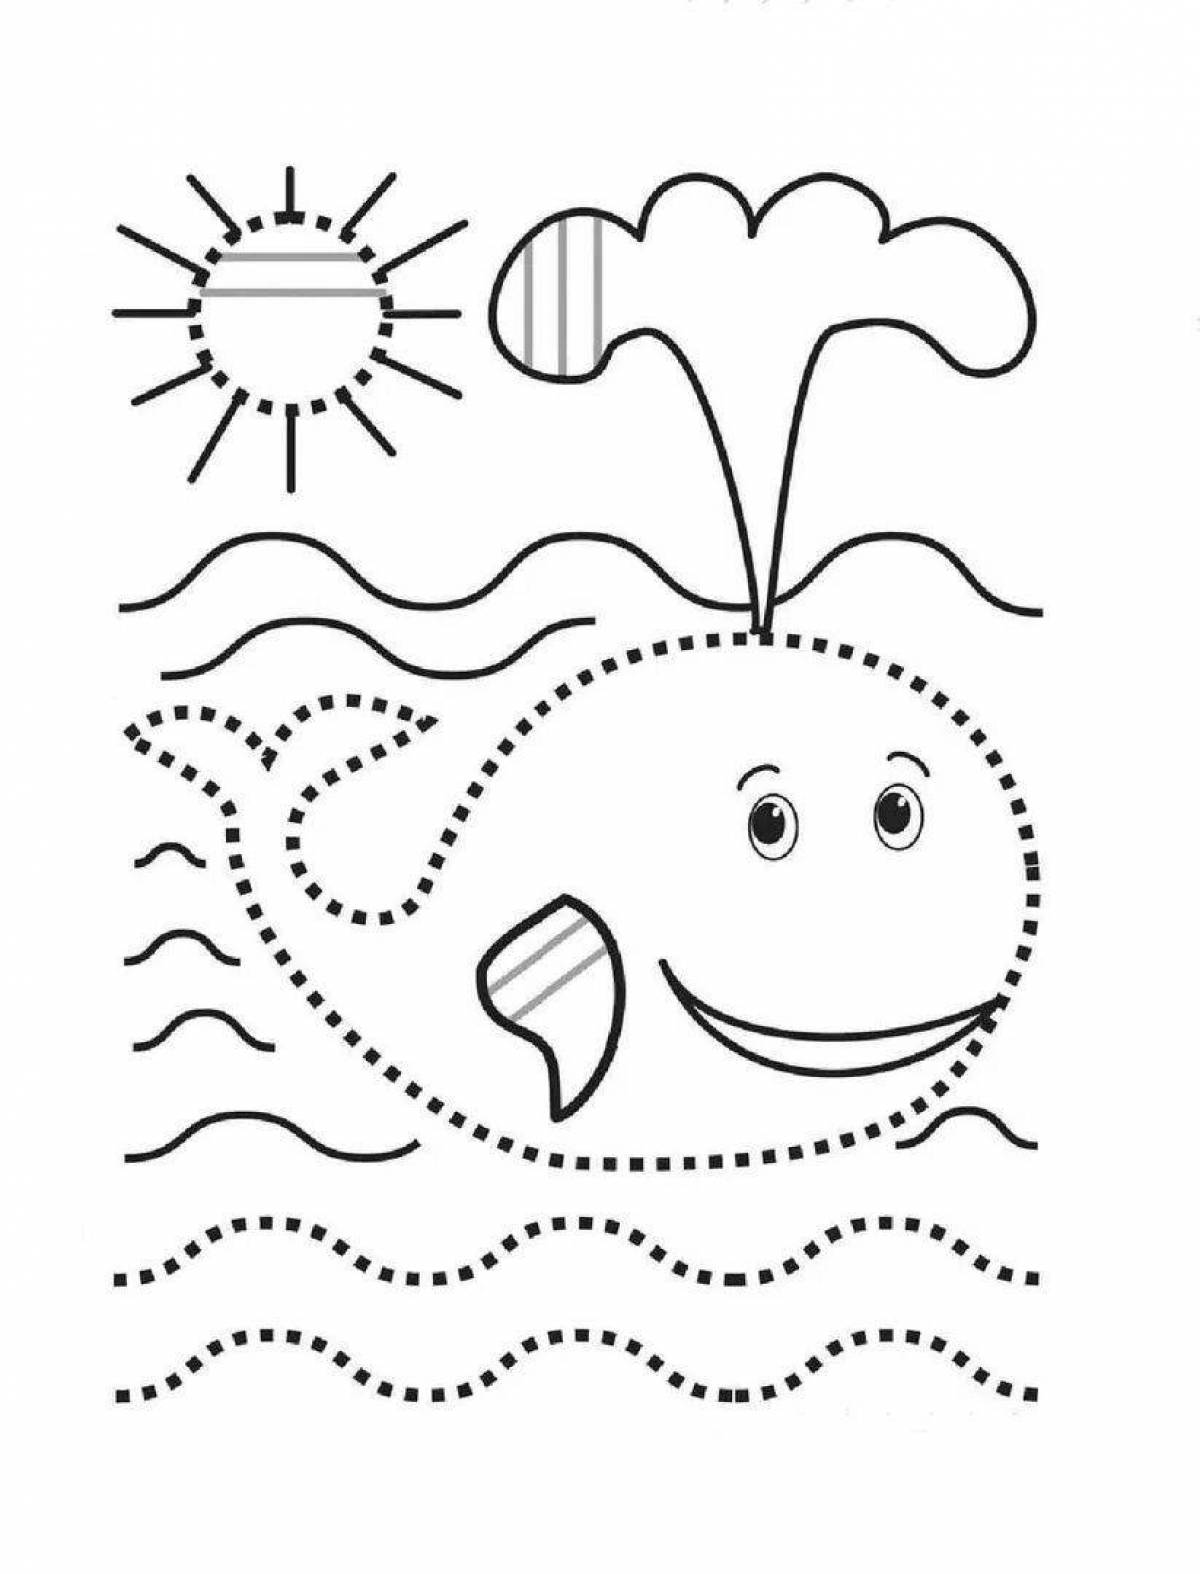 Раскраска радостные пунктирные линии для детей 5-7 лет